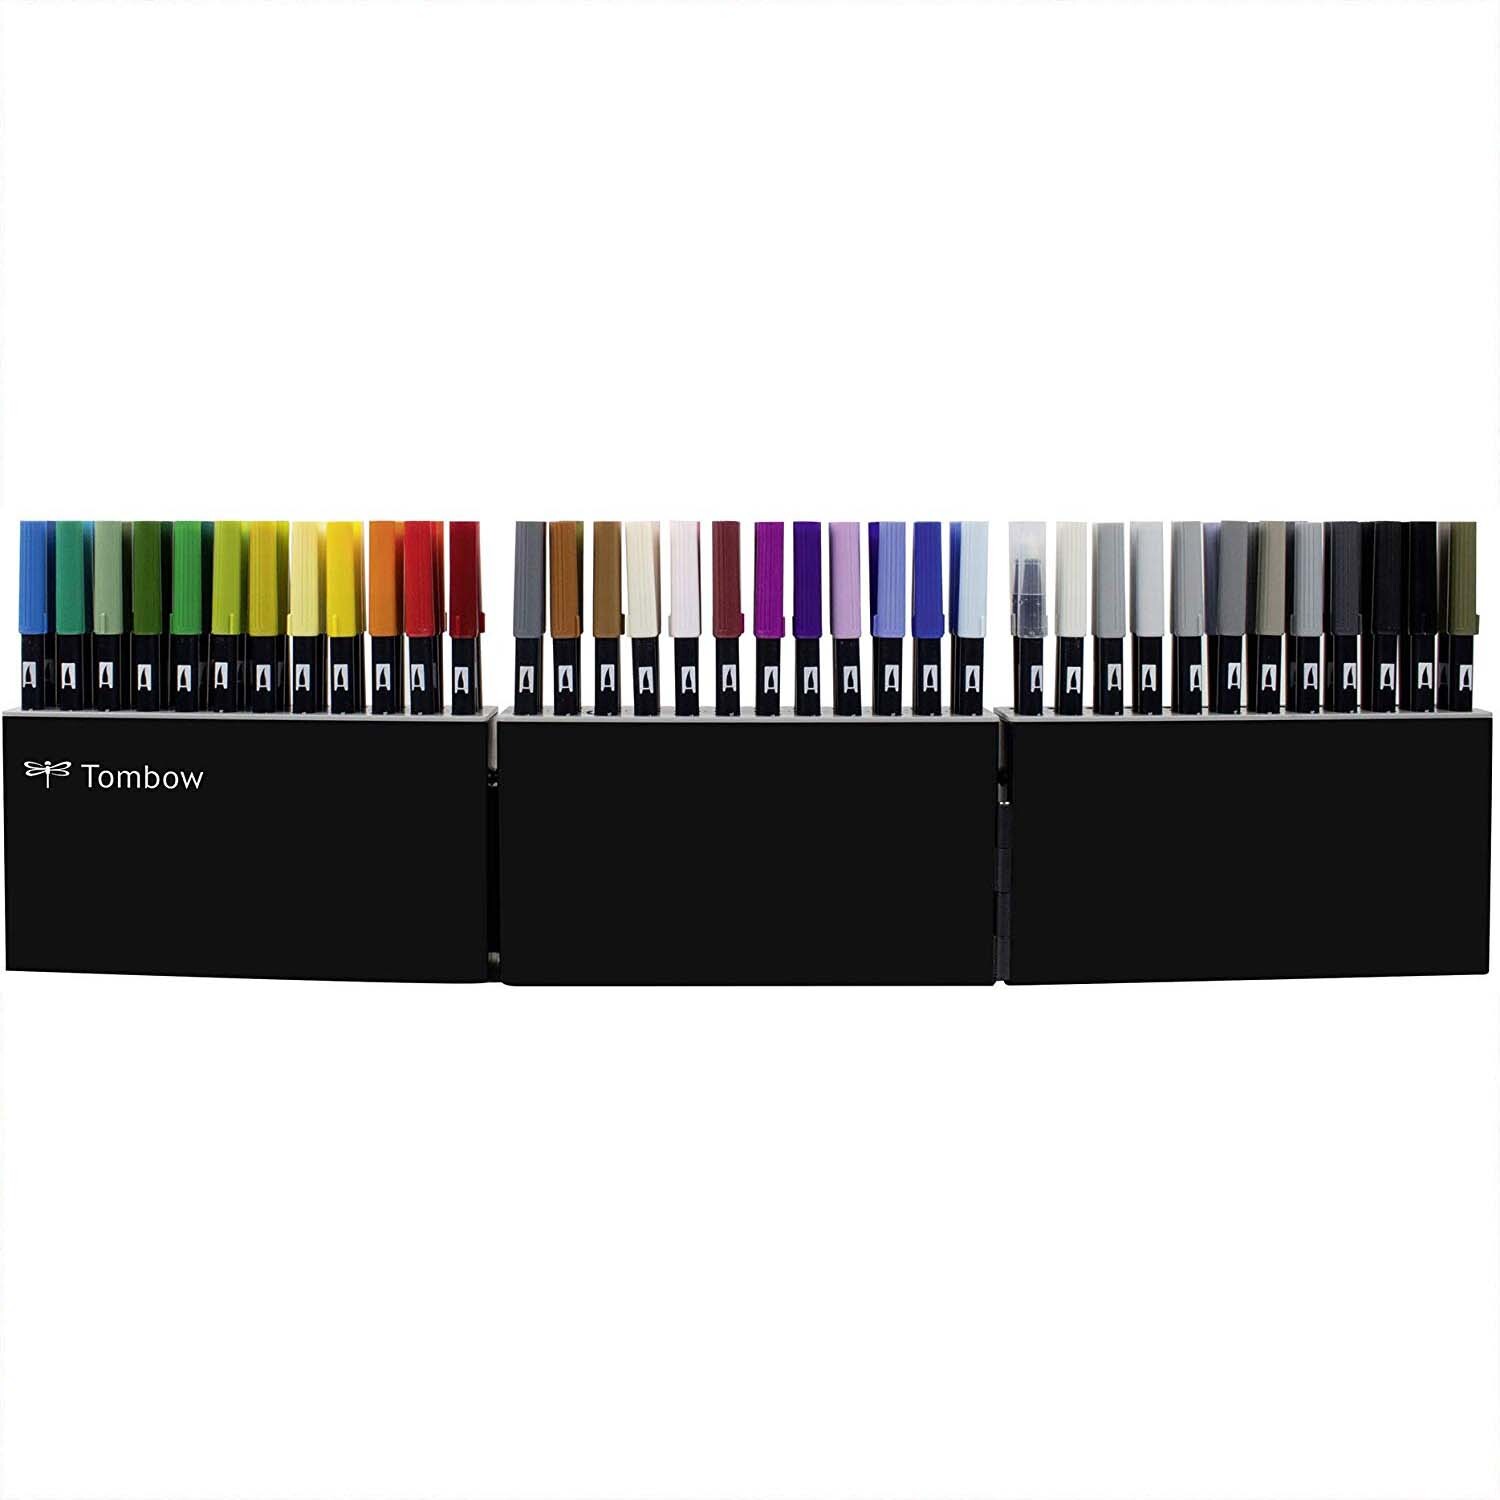 ABT Dual Brush Pen in der Stiftebox 107 Farben und Blender